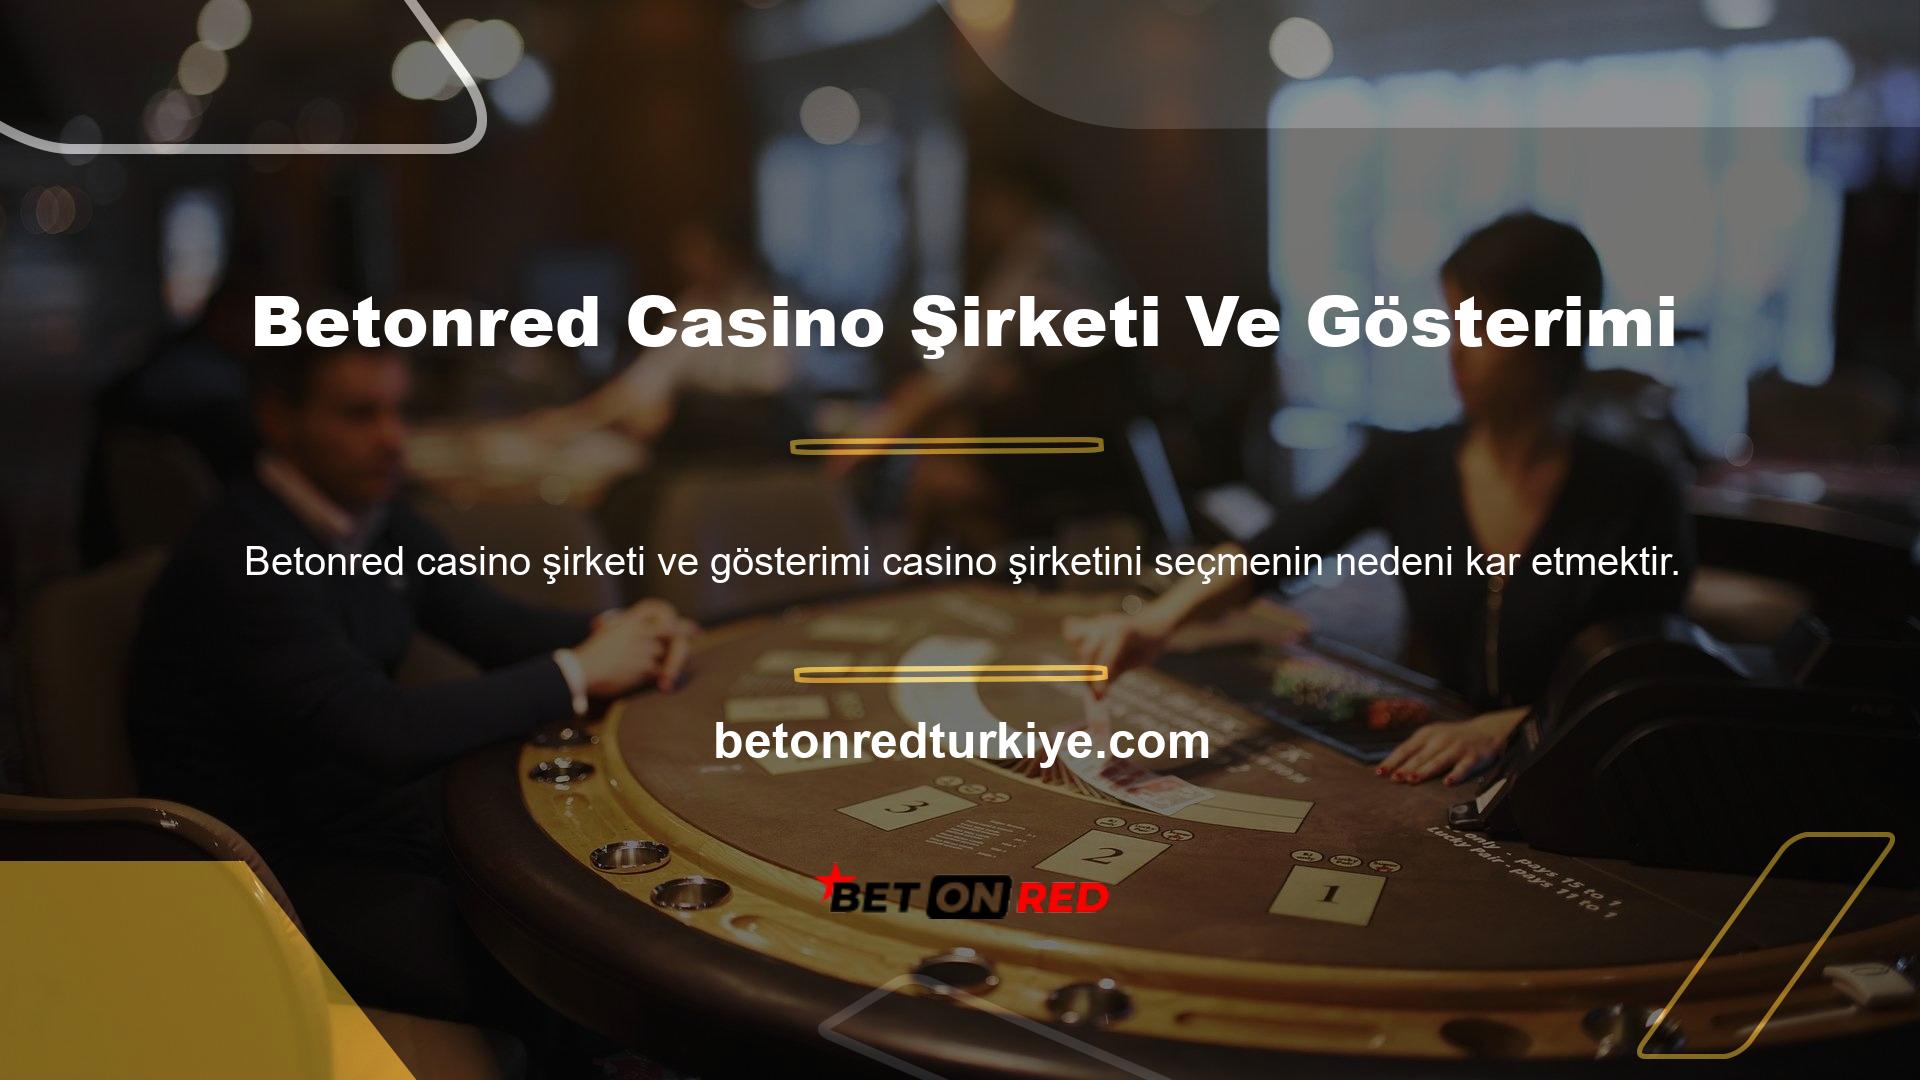 En güvenilir casino siteleri diğer sitelere göre çok daha yüksek ücretler ödemektedir